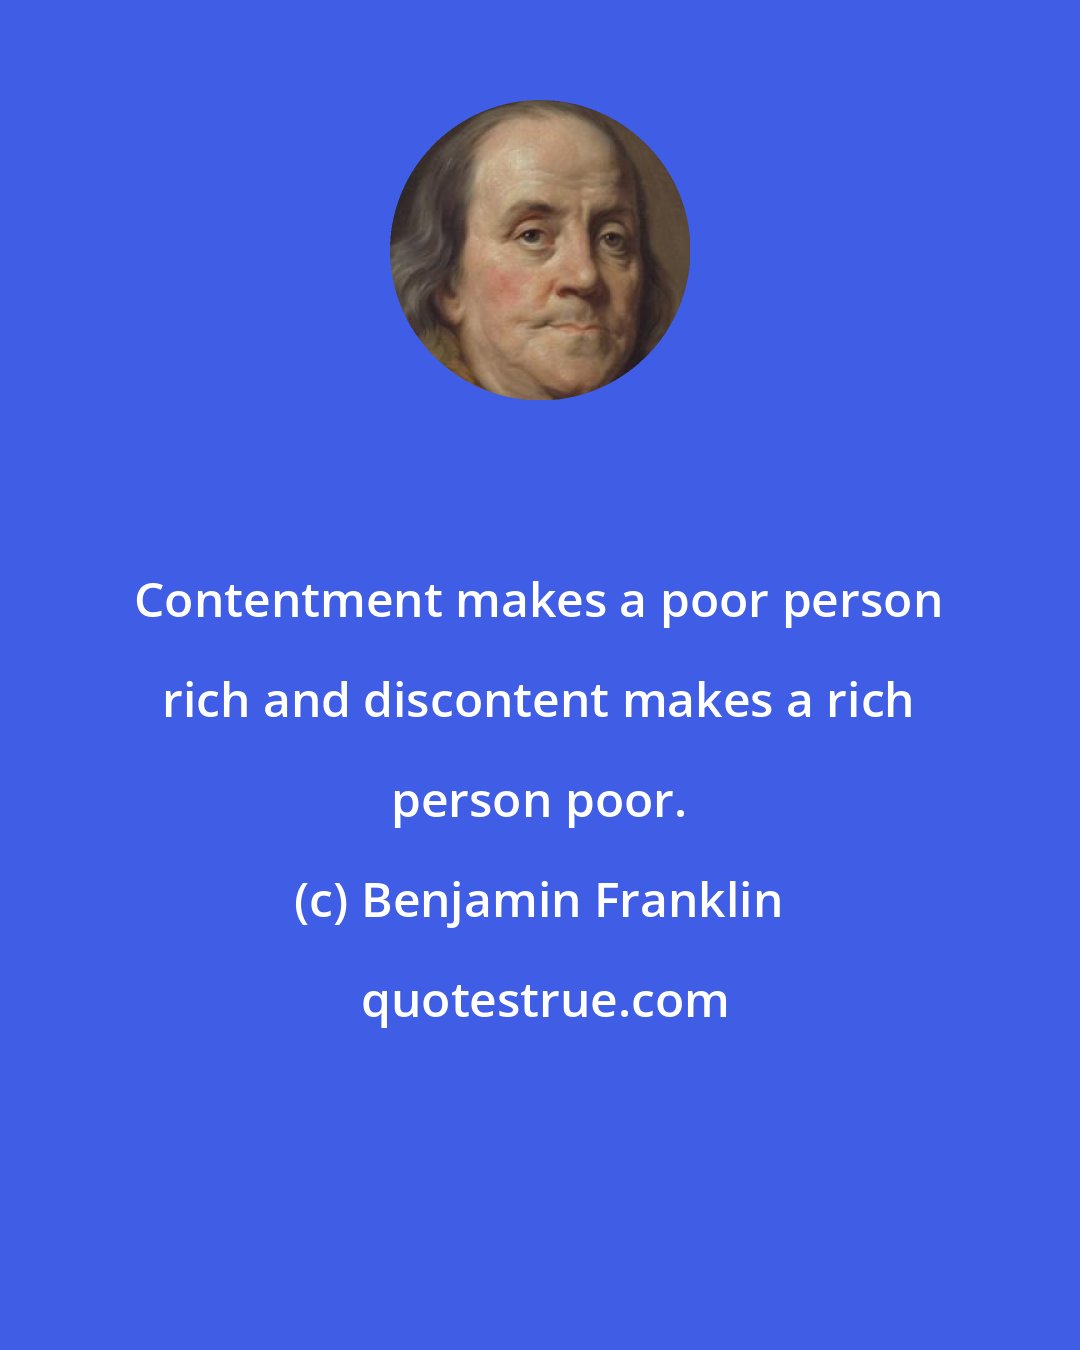 Benjamin Franklin: Contentment makes a poor person rich and discontent makes a rich person poor.